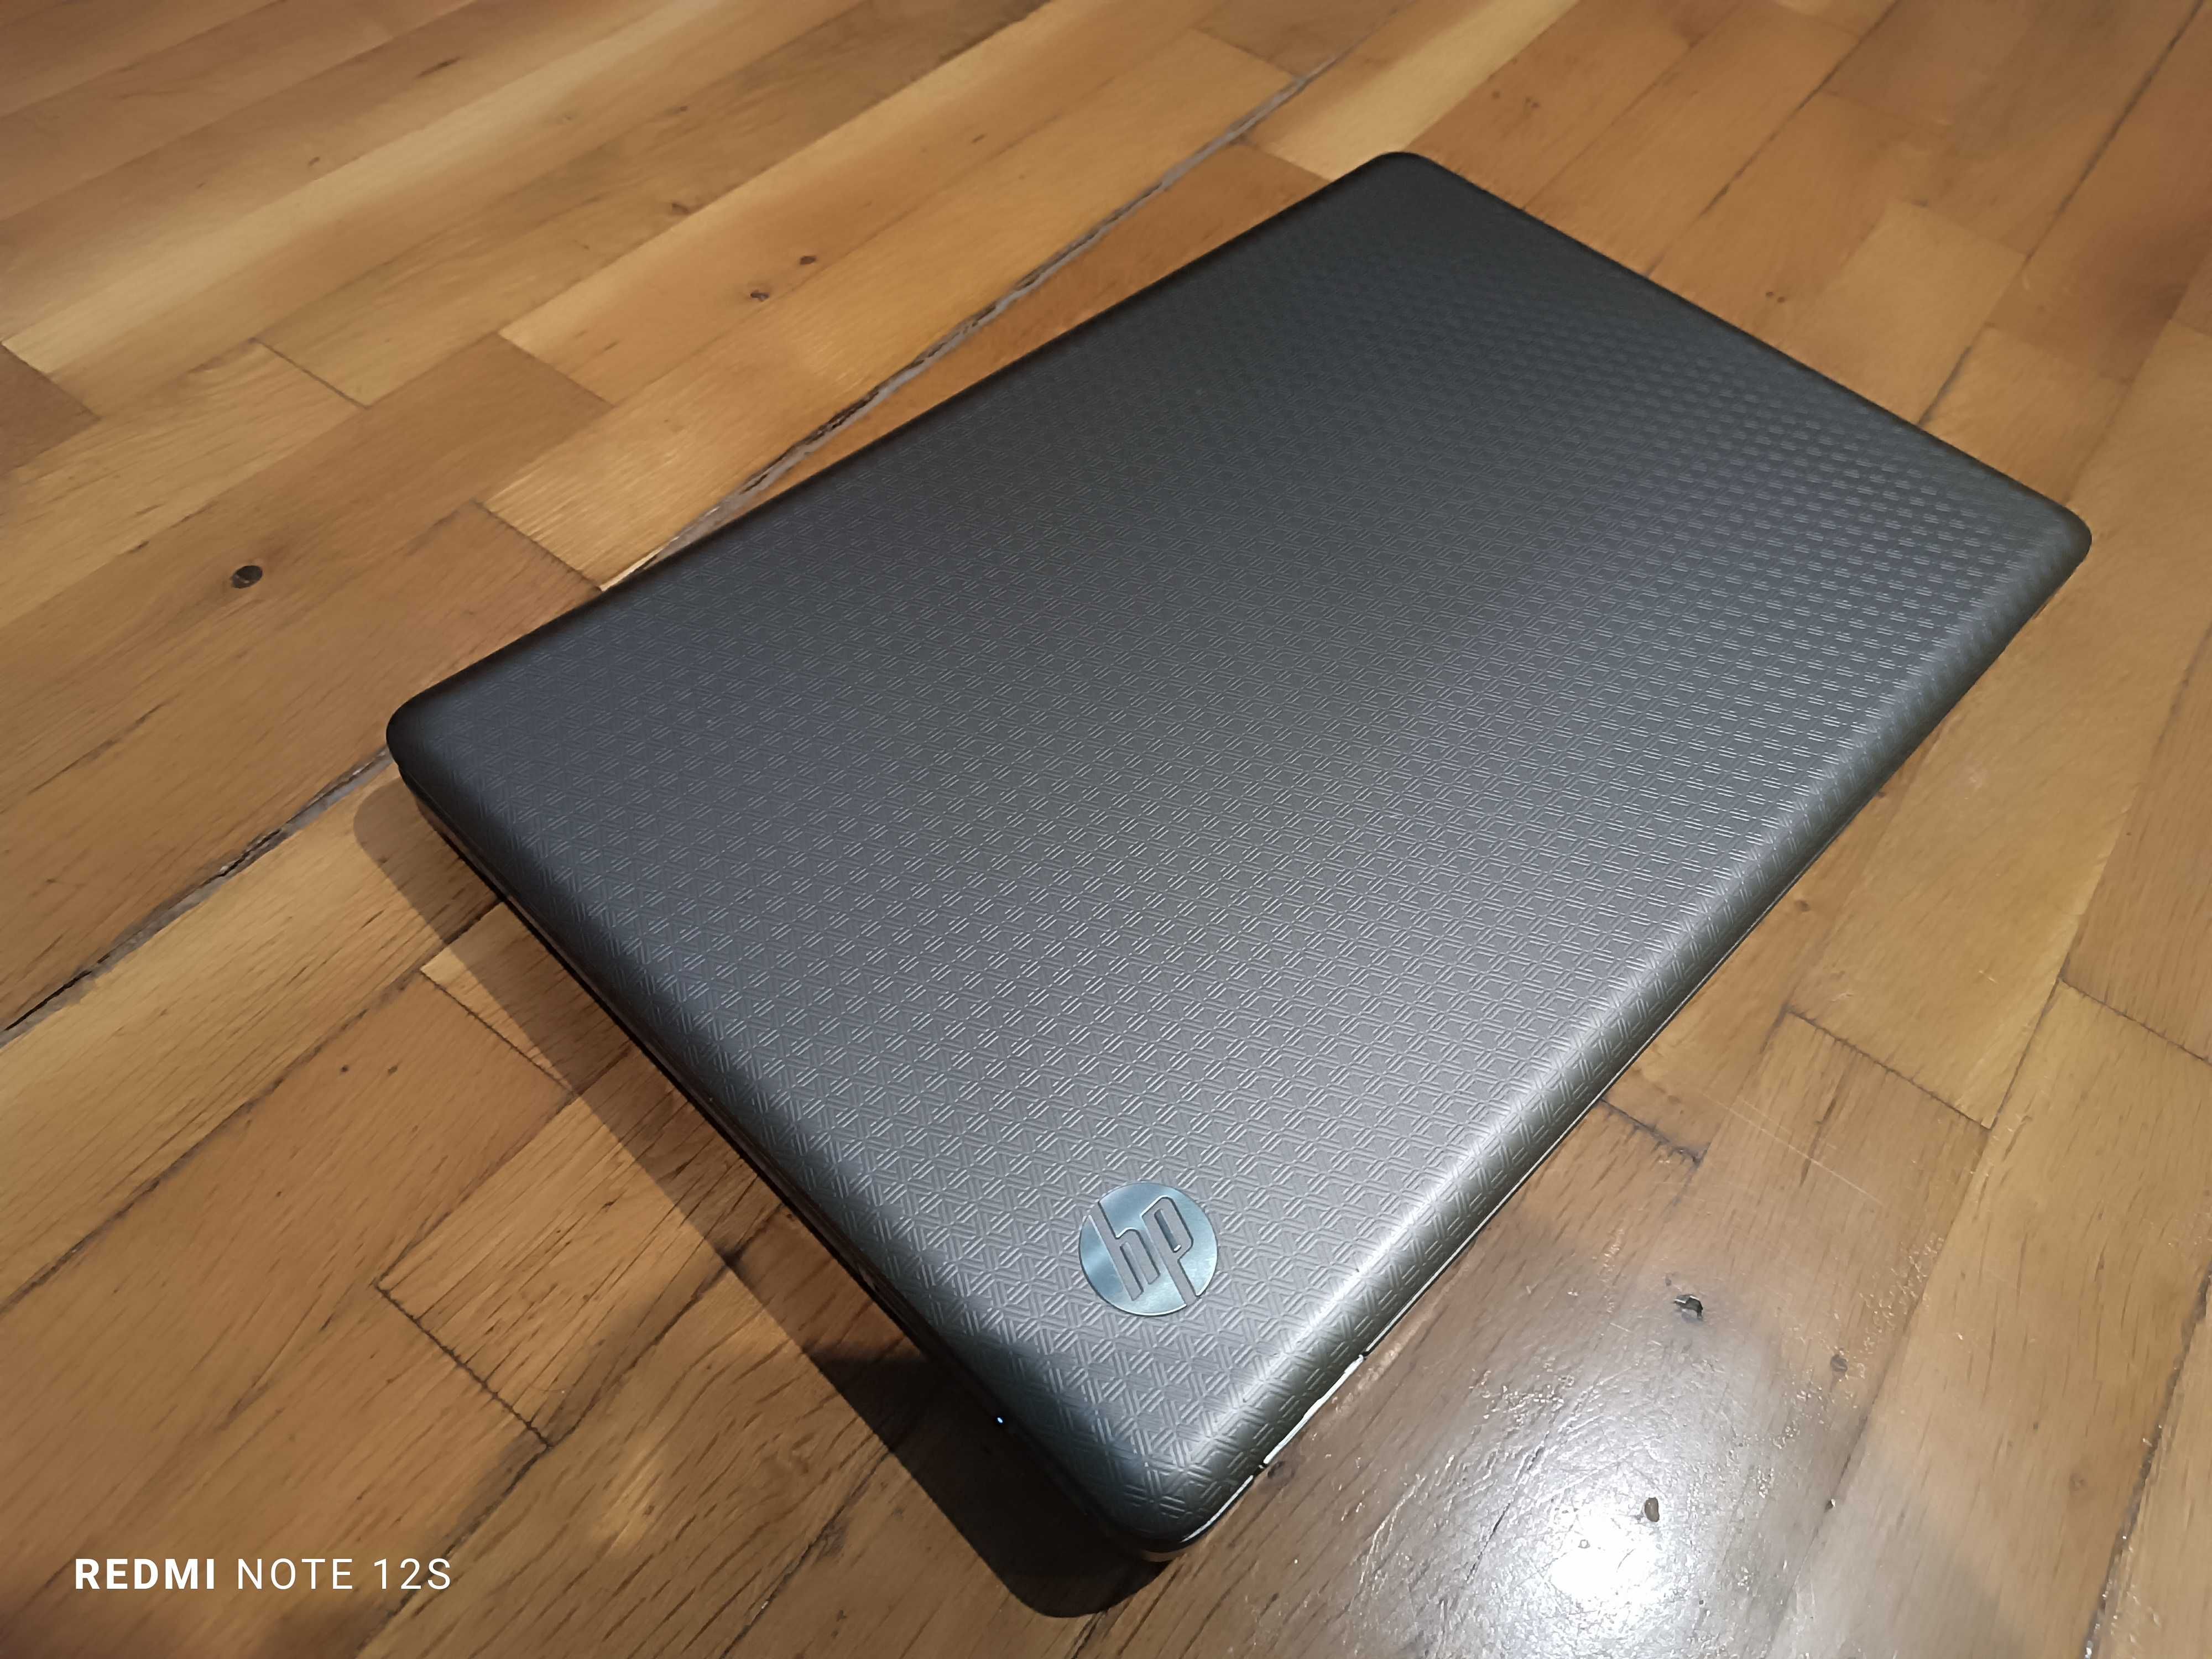 Лаптоп HP G62 AMD Turion II Dual Core P540